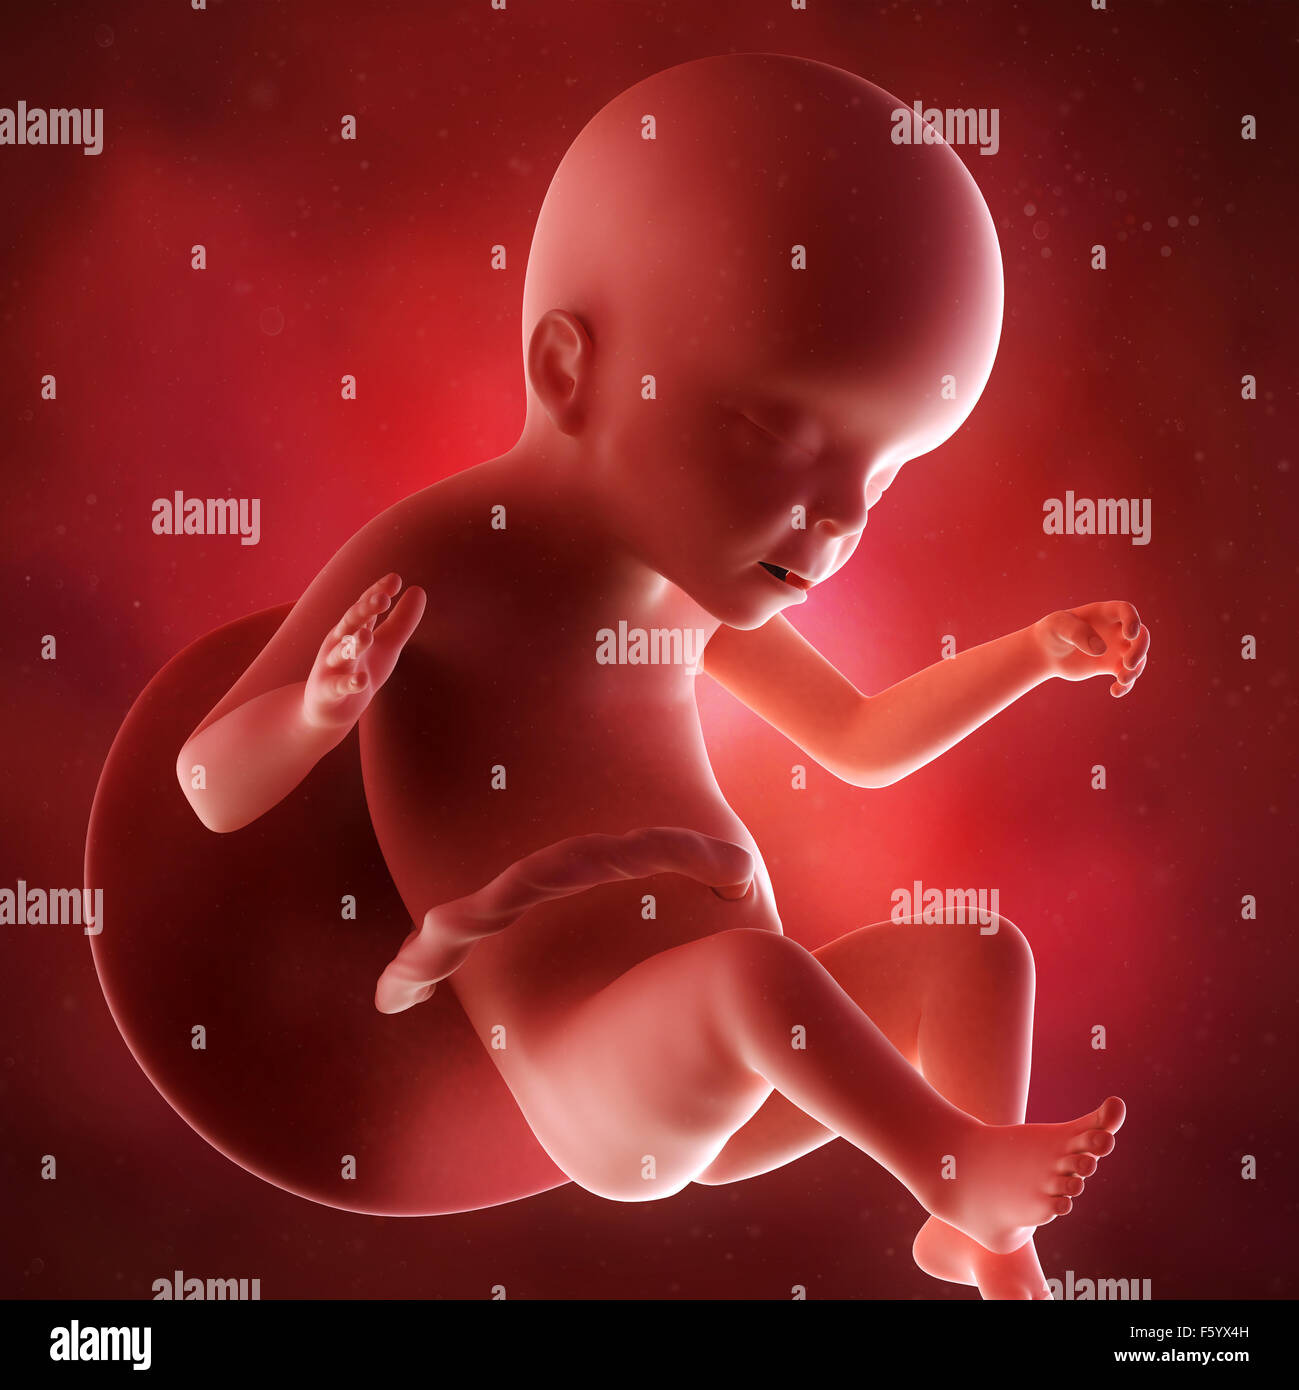 Précision médicale 3d illustration d'un foetus de la semaine 23 Banque D'Images